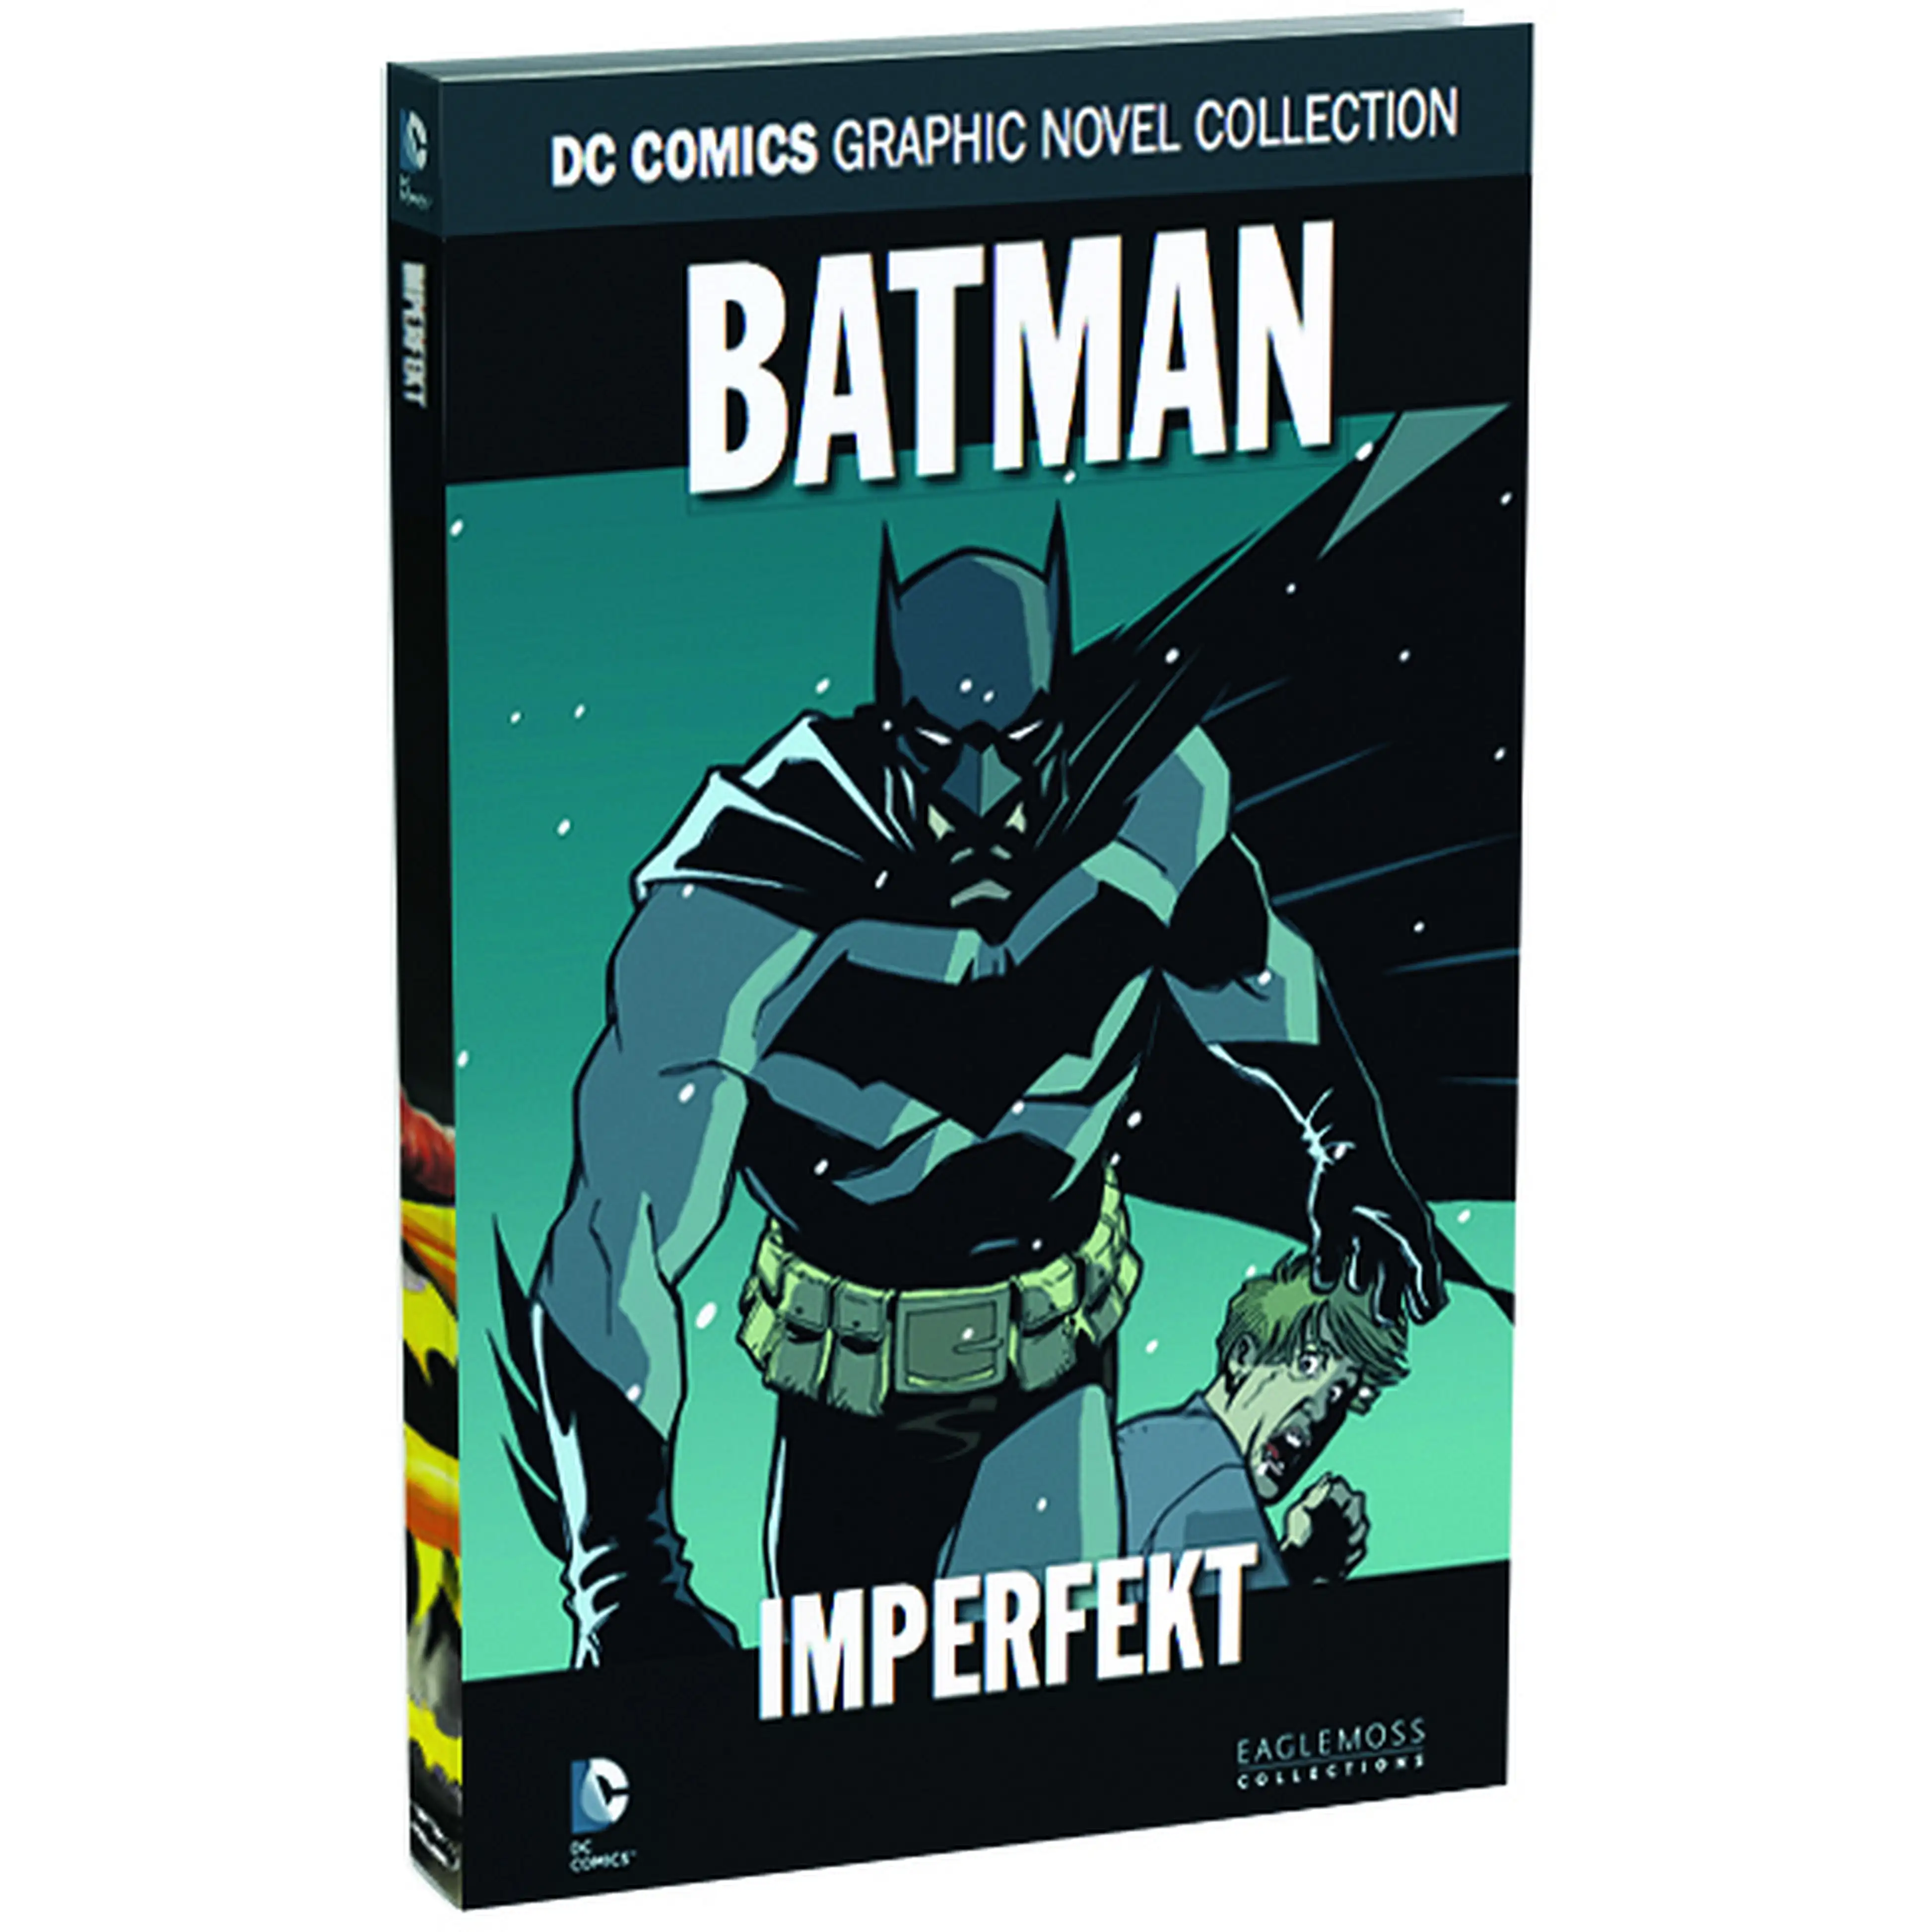 DC Comics Graphic Novel Collection Batman - Imperfekt